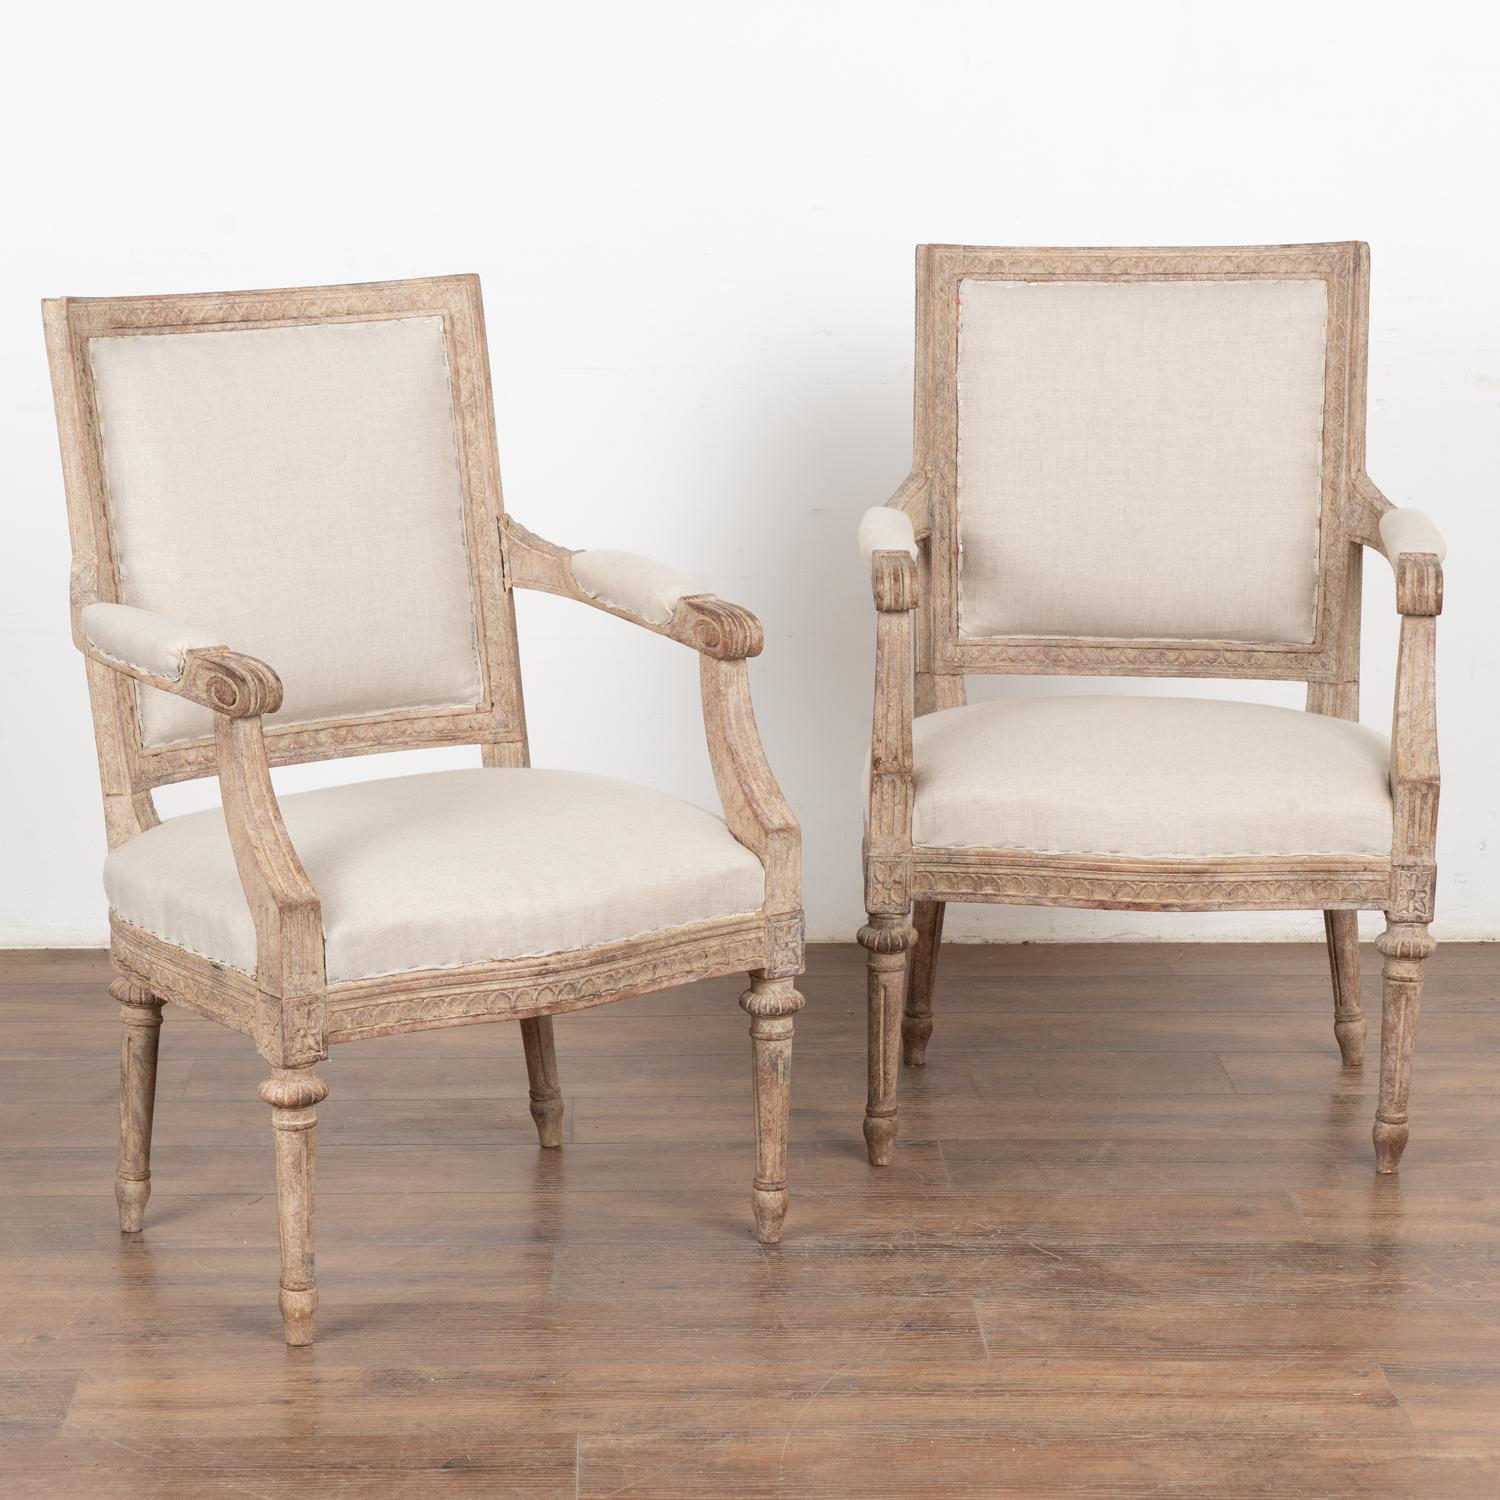 Paire de fauteuils suédois peints en blanc, avec détails sculptés le long des bords, du haut du dossier et du bas de l'assise ; pieds cannelés tournés.
La finition peinte en blanc antique, plus récente et appliquée par des professionnels, est